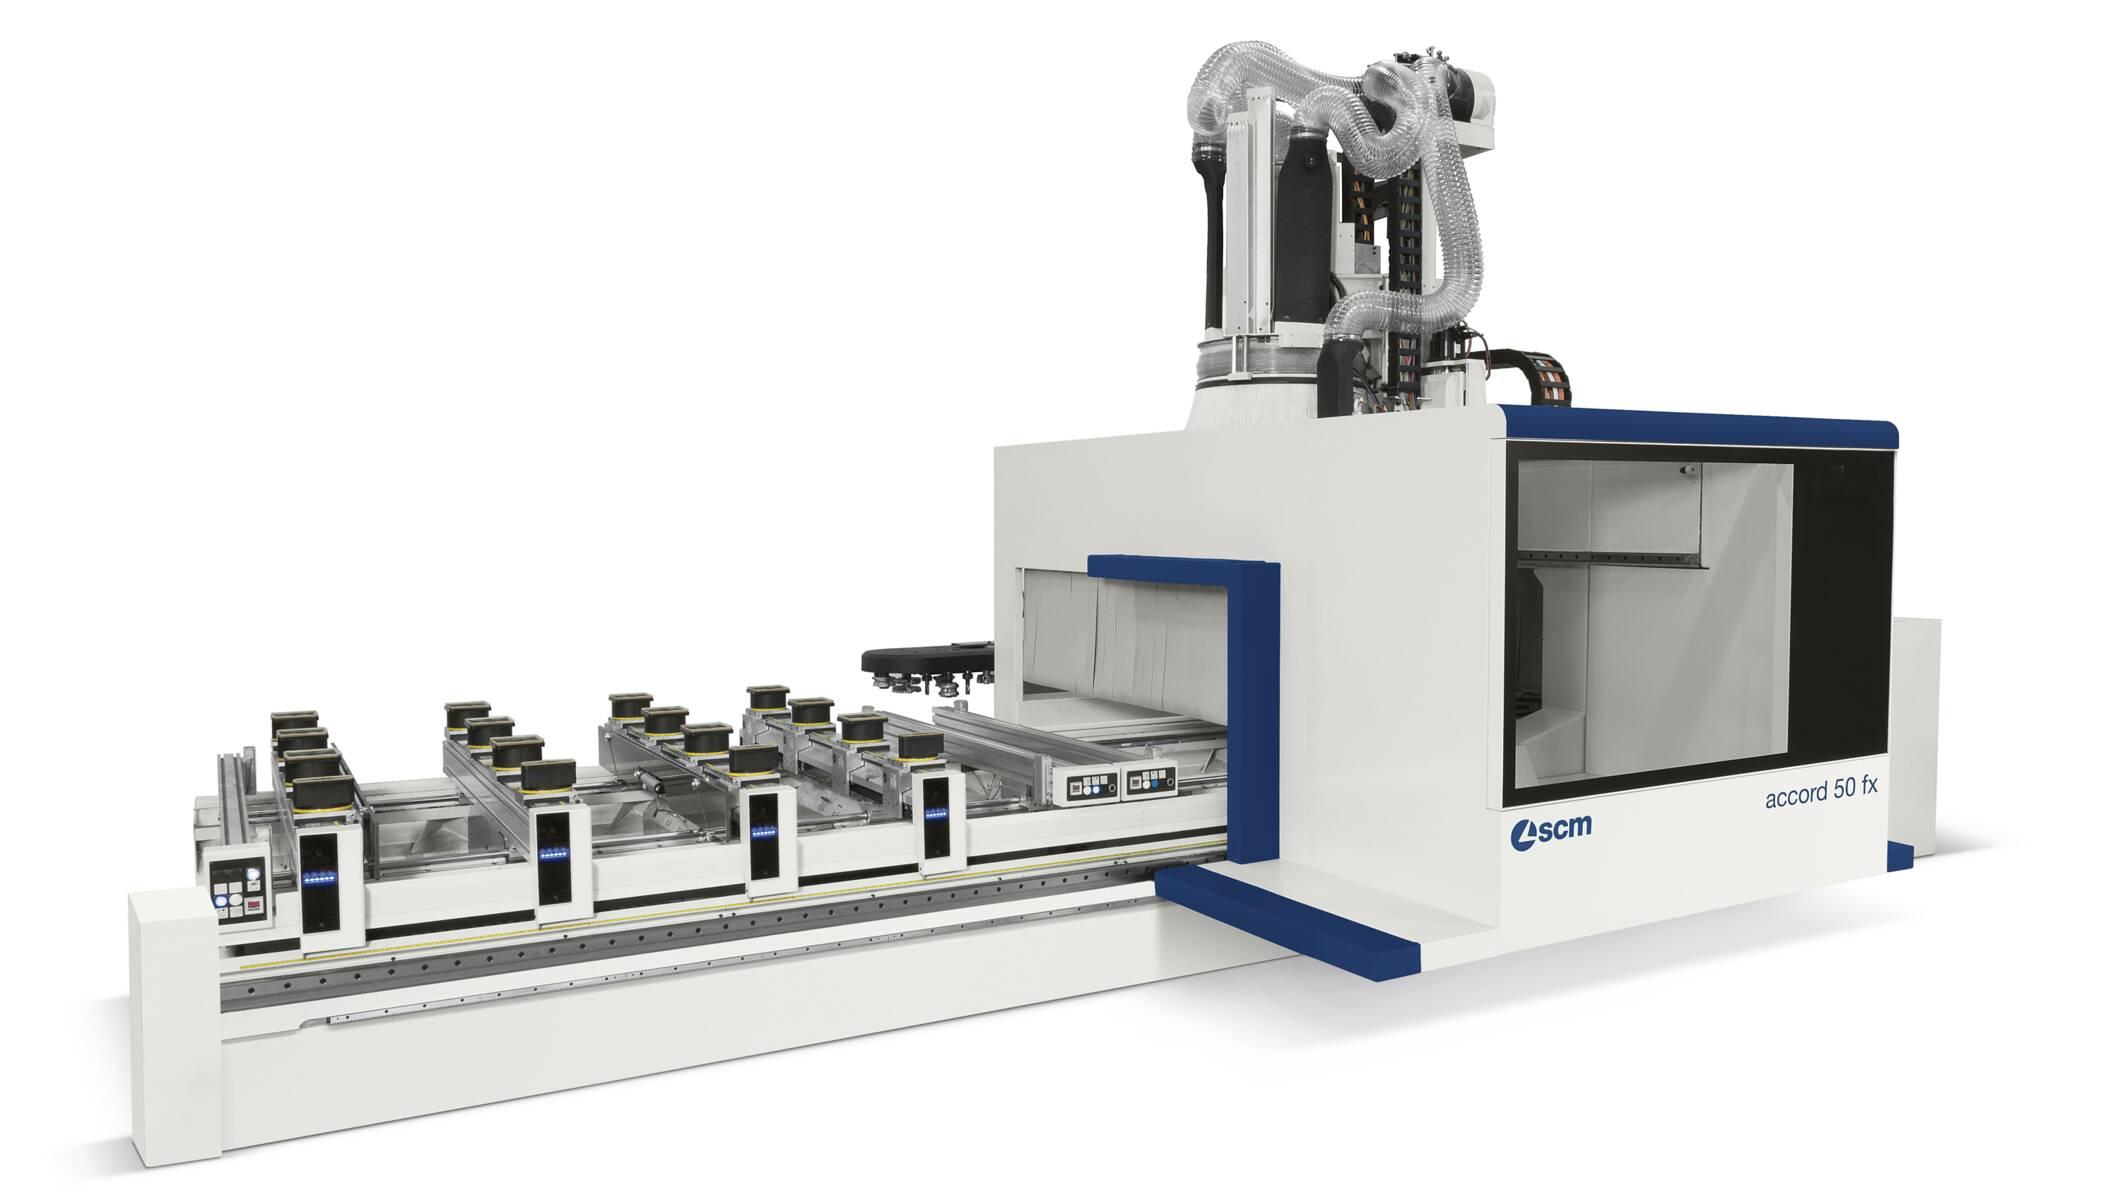 CNC-Bearbeitungszentren - CNC-Bearbeitungsmaschinen zum Fräsen und Bohren - accord 50 fx